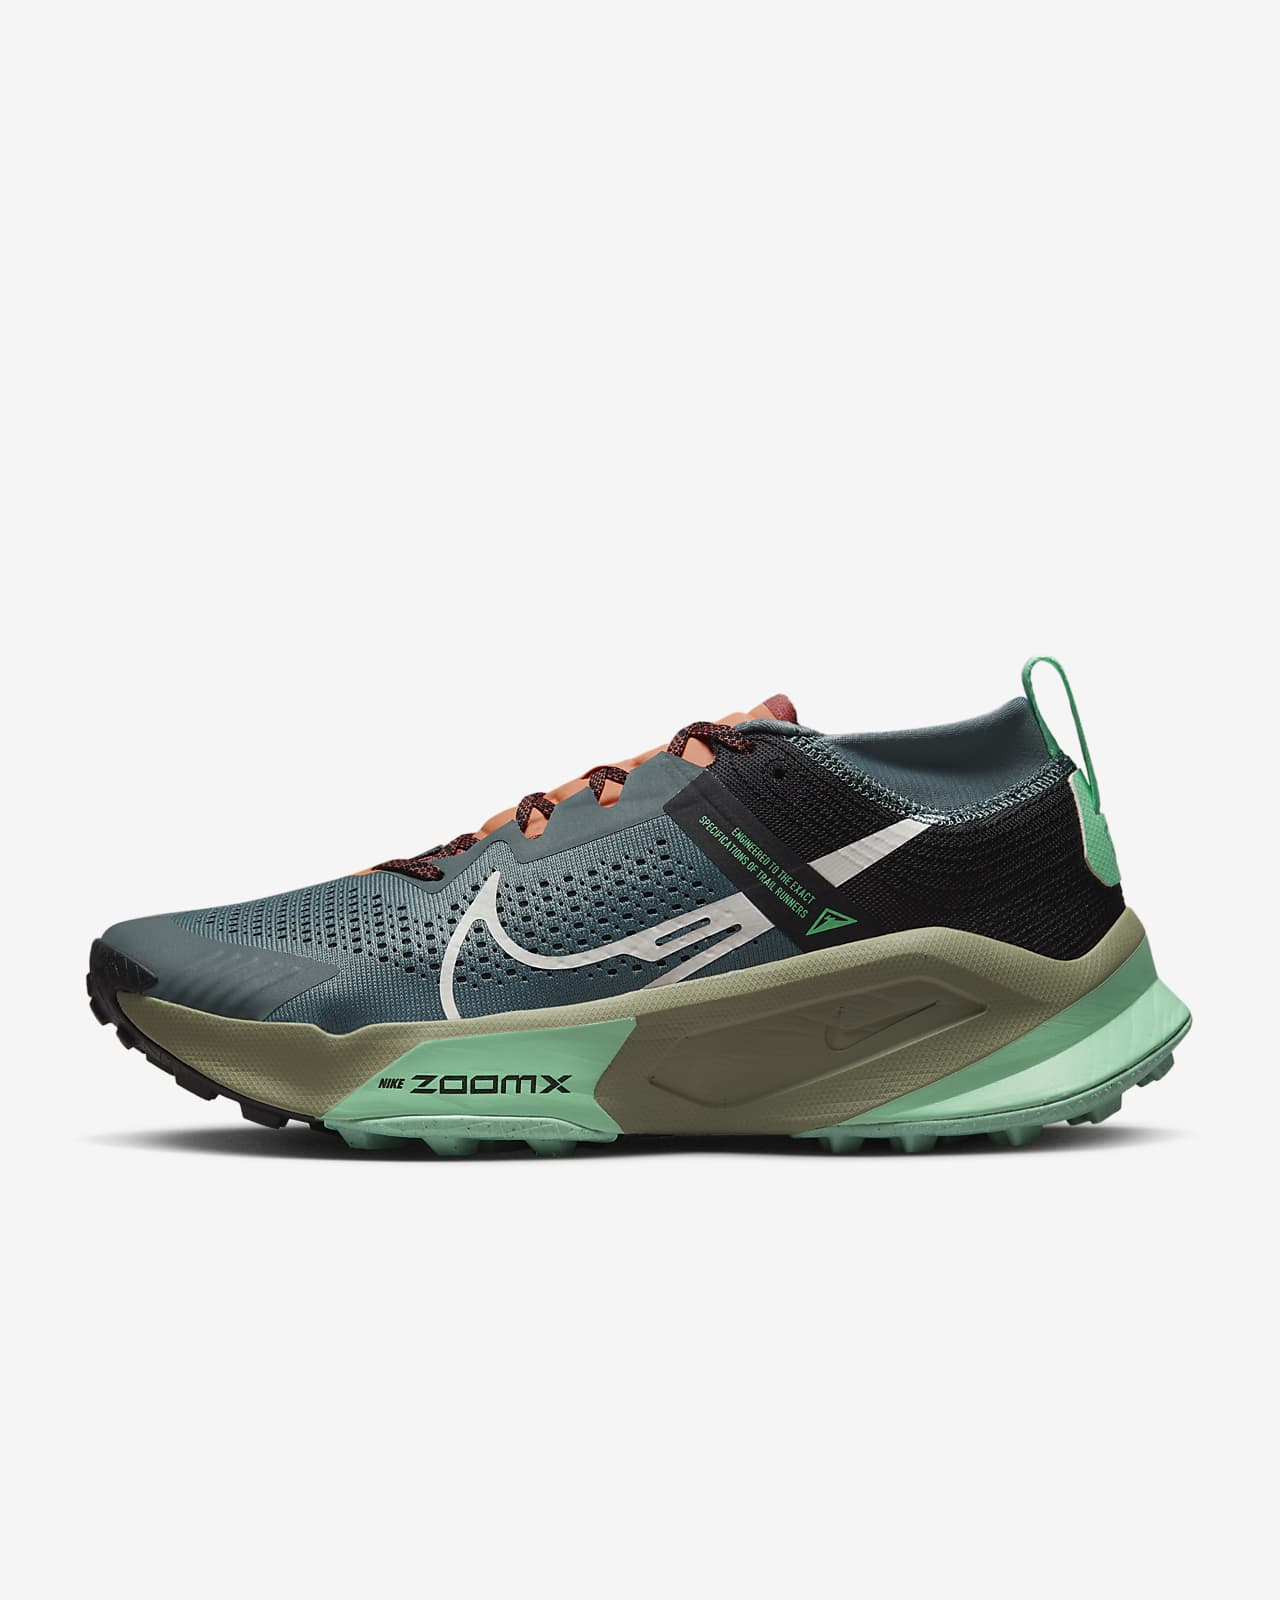 Nike Zegama Men's Trail-Running Shoes